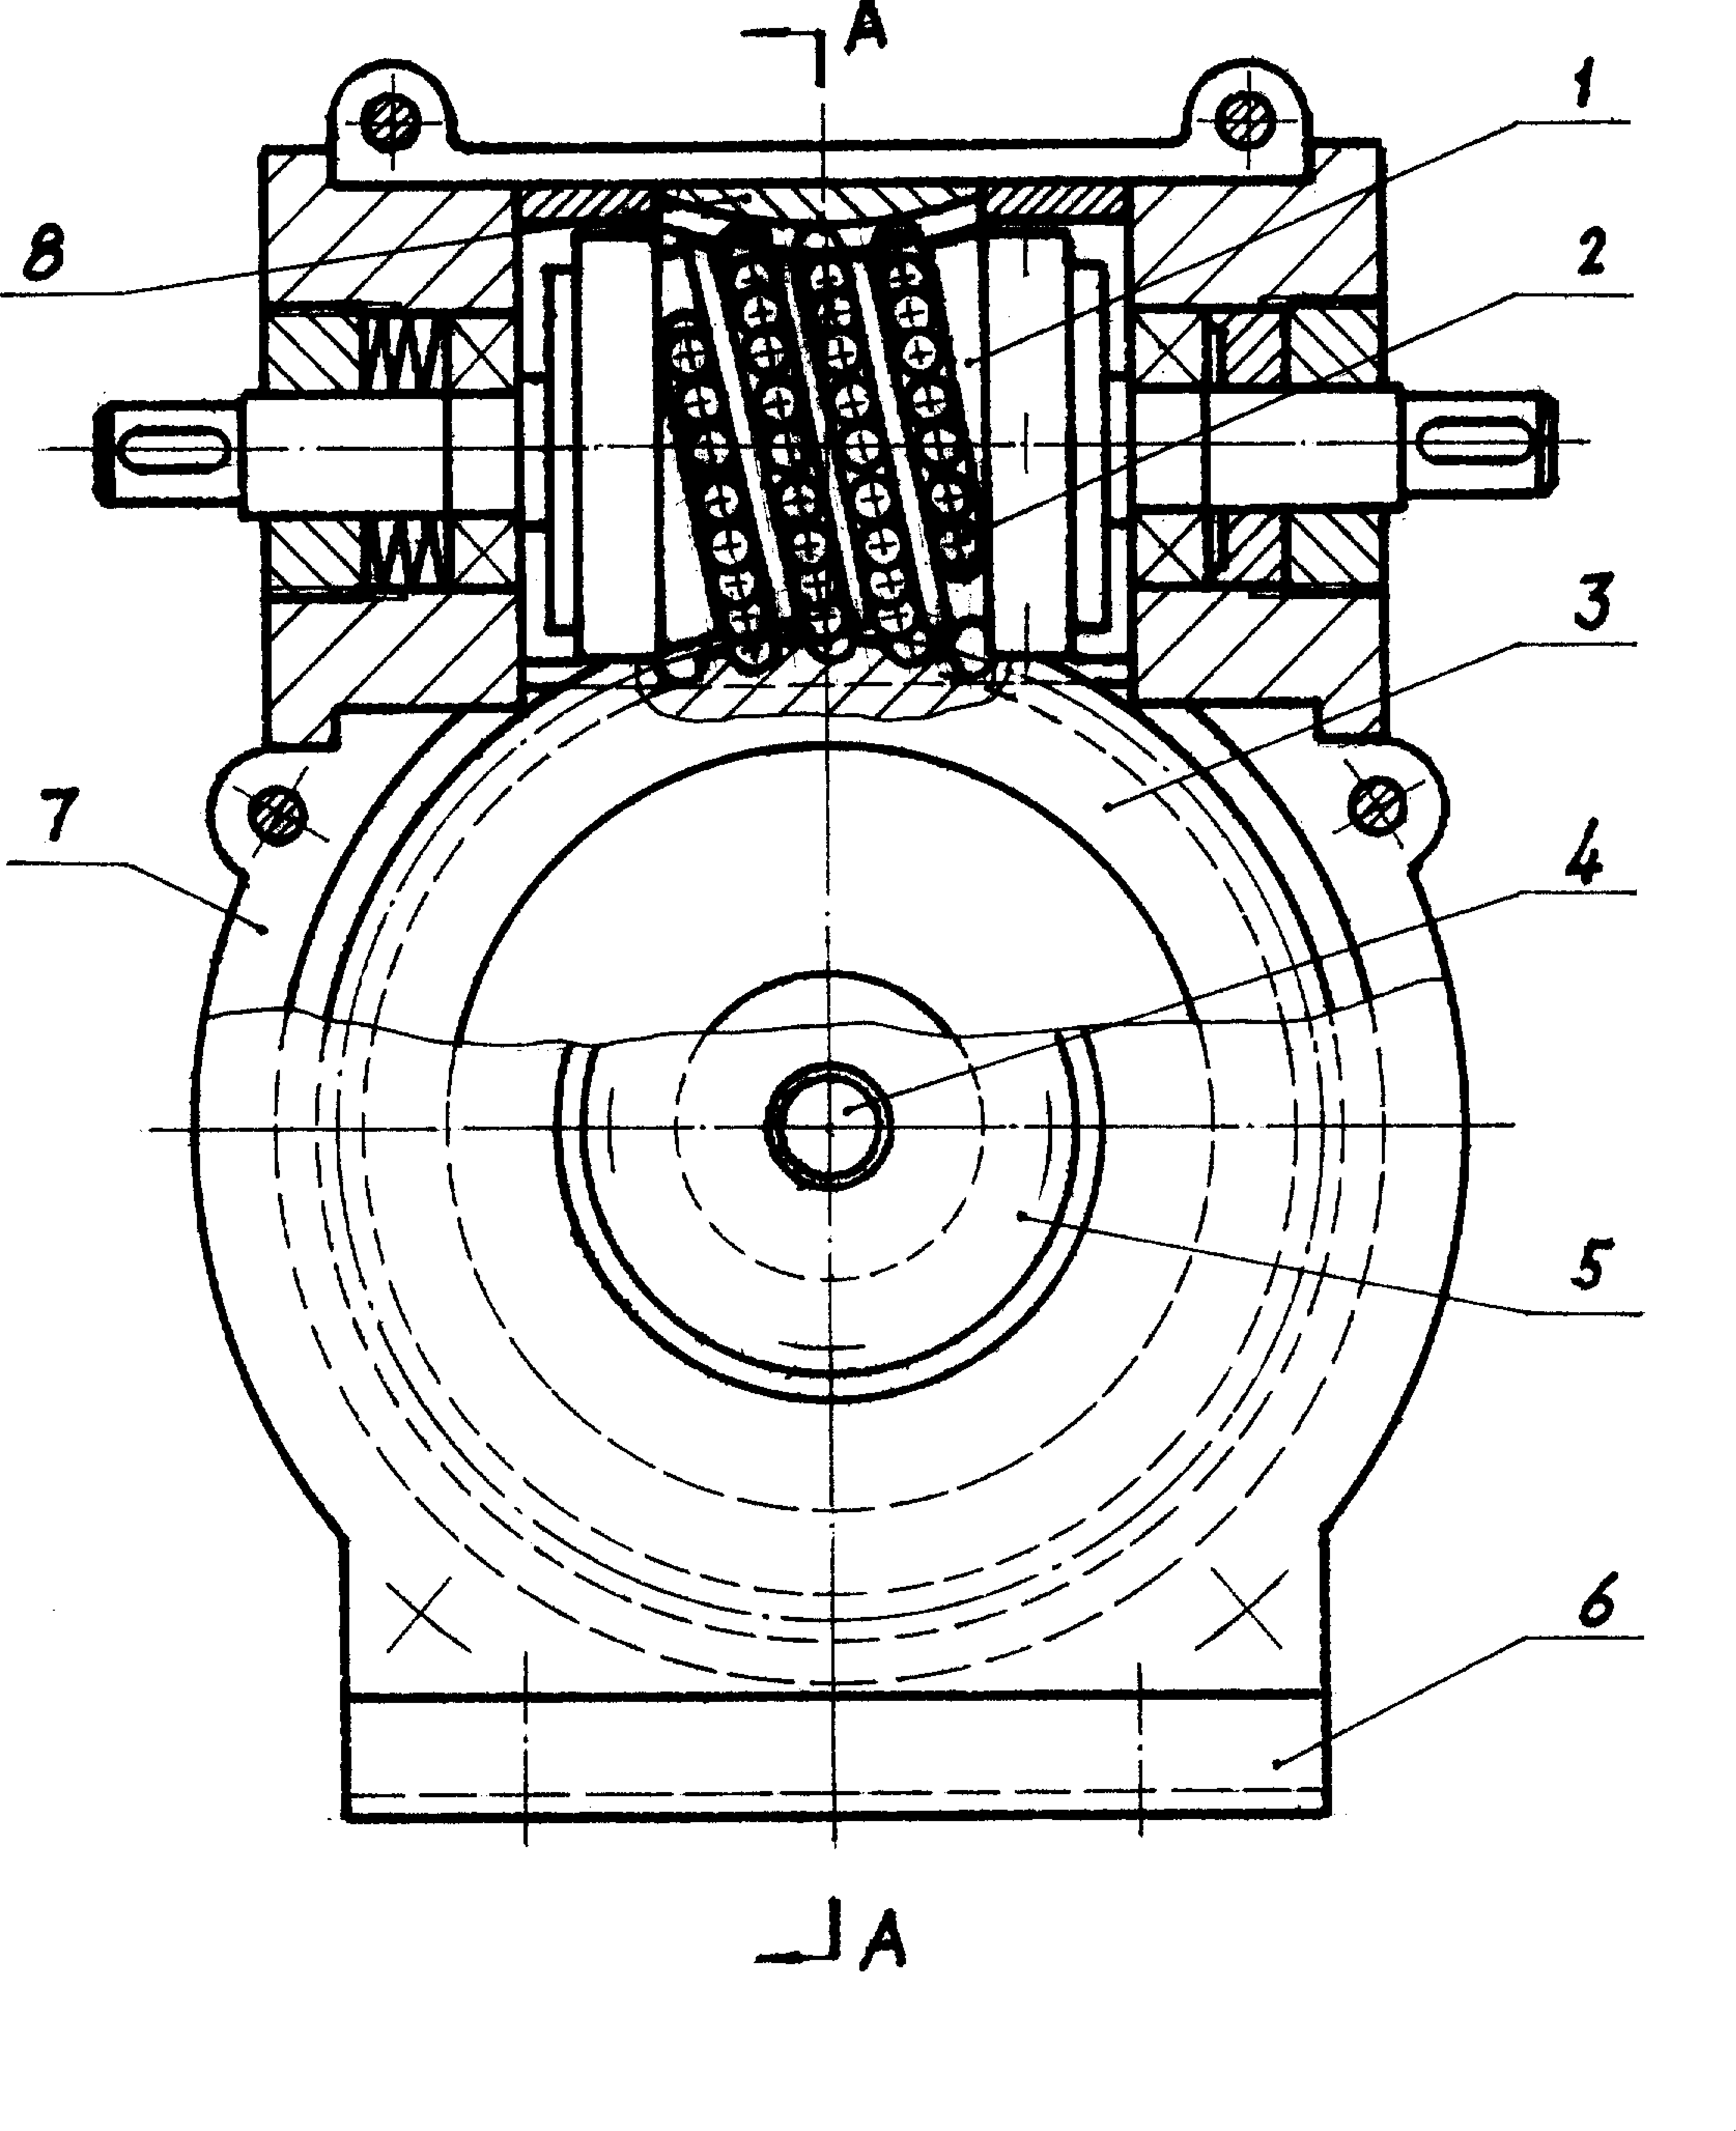 标准钢球(2)在蜗杆(1)与蜗轮(3)之间沿特殊设计的滚道排列成封闭的